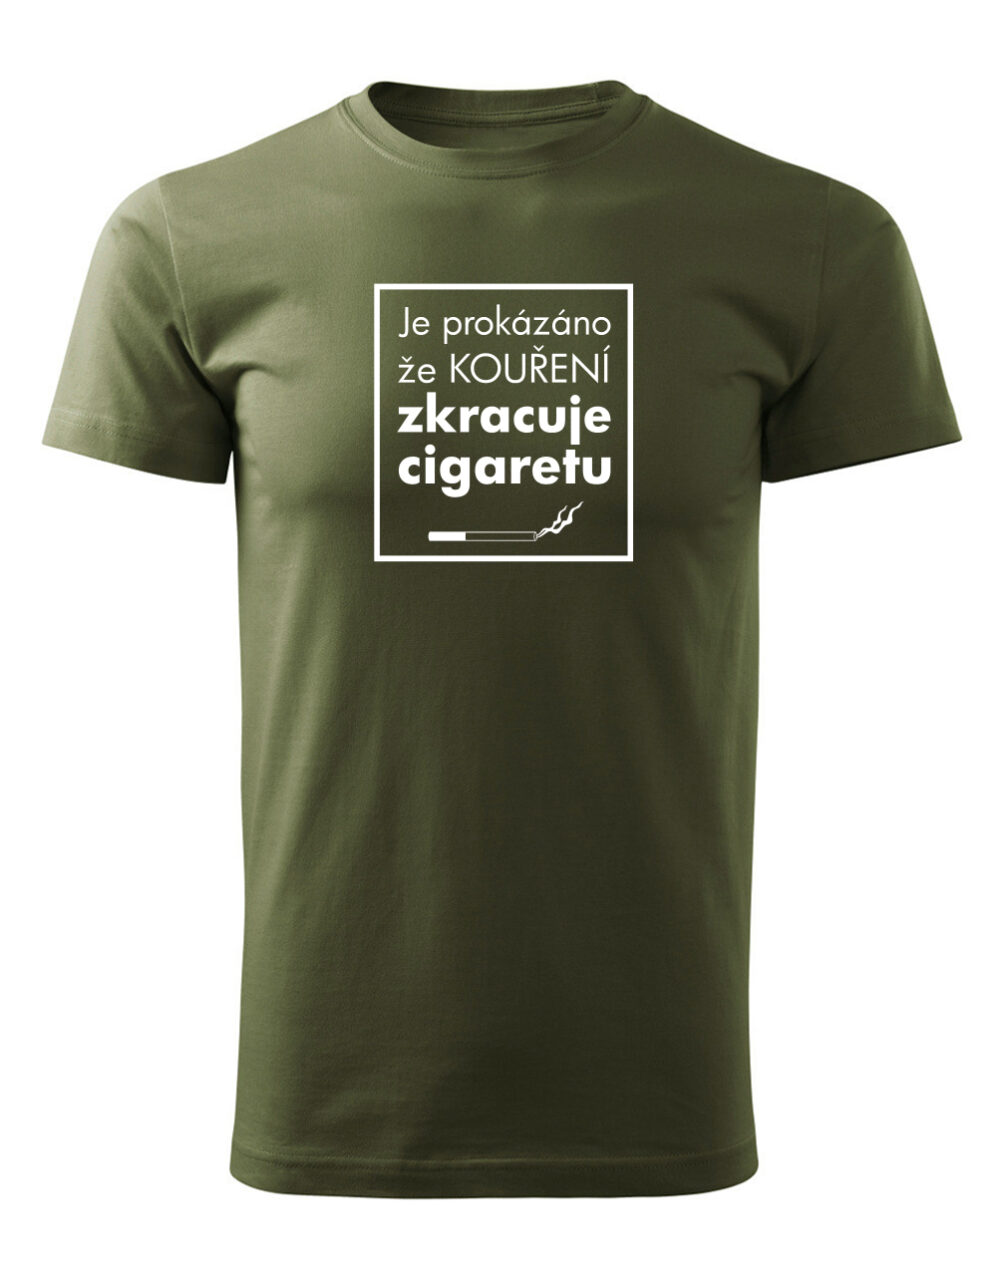 Pánské tričko s potiskem Kouření zkracuje cigaretu vojenská zelená